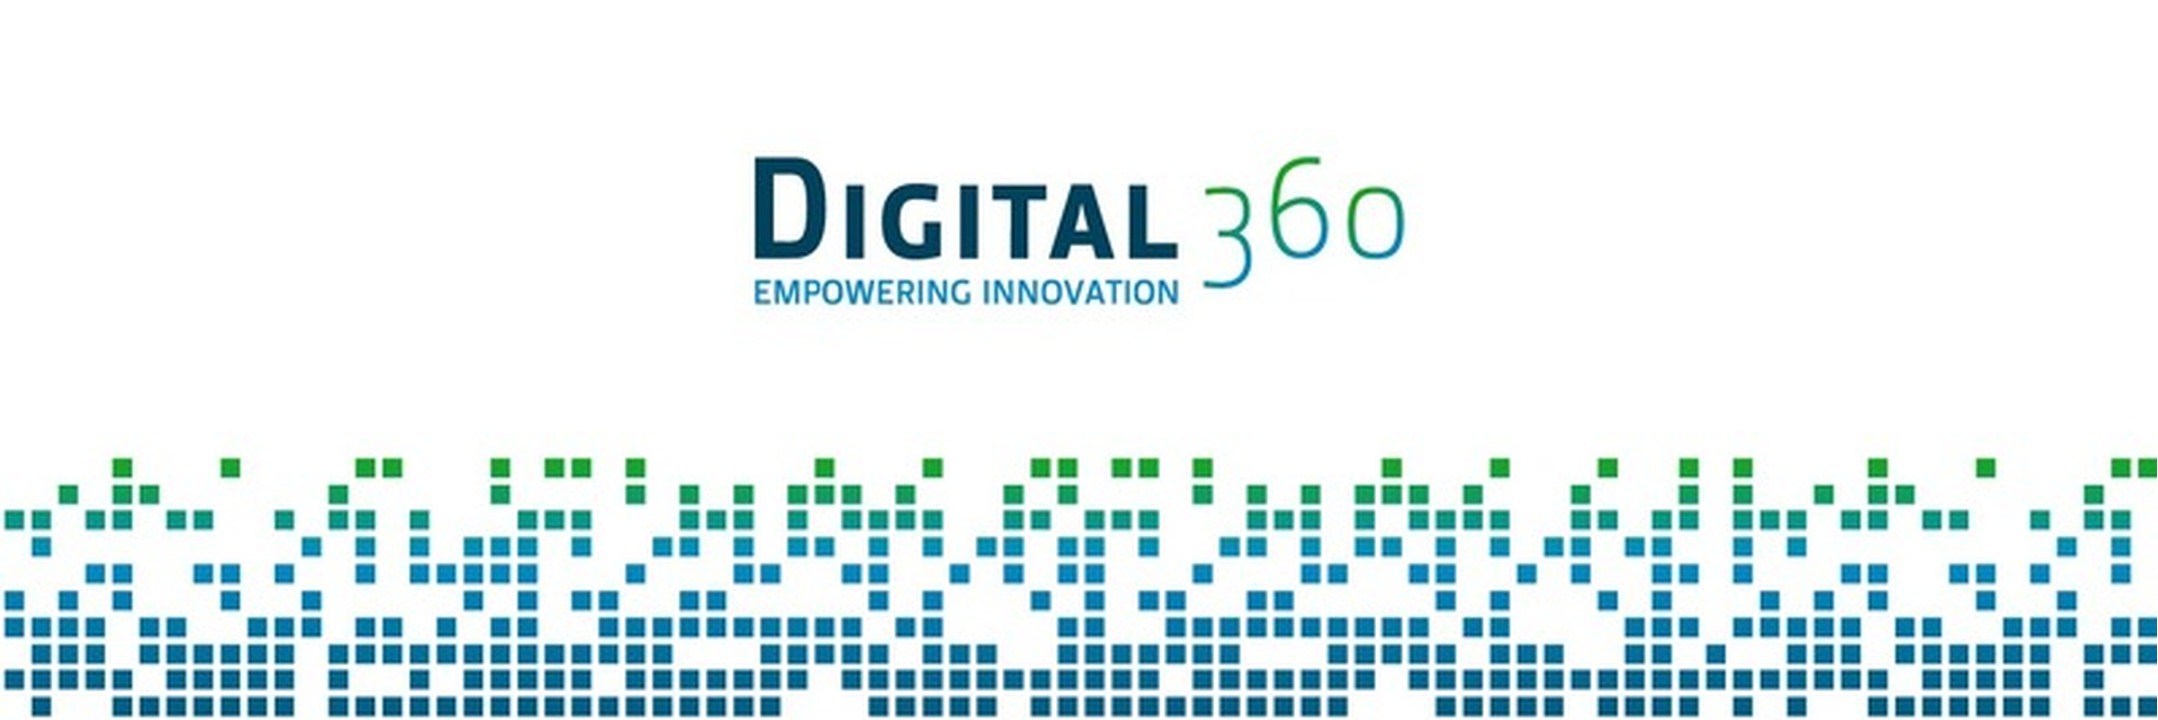 Digital360 incontra TechTarget: servizi digitali innovativi per il marketing e le vendite B2B